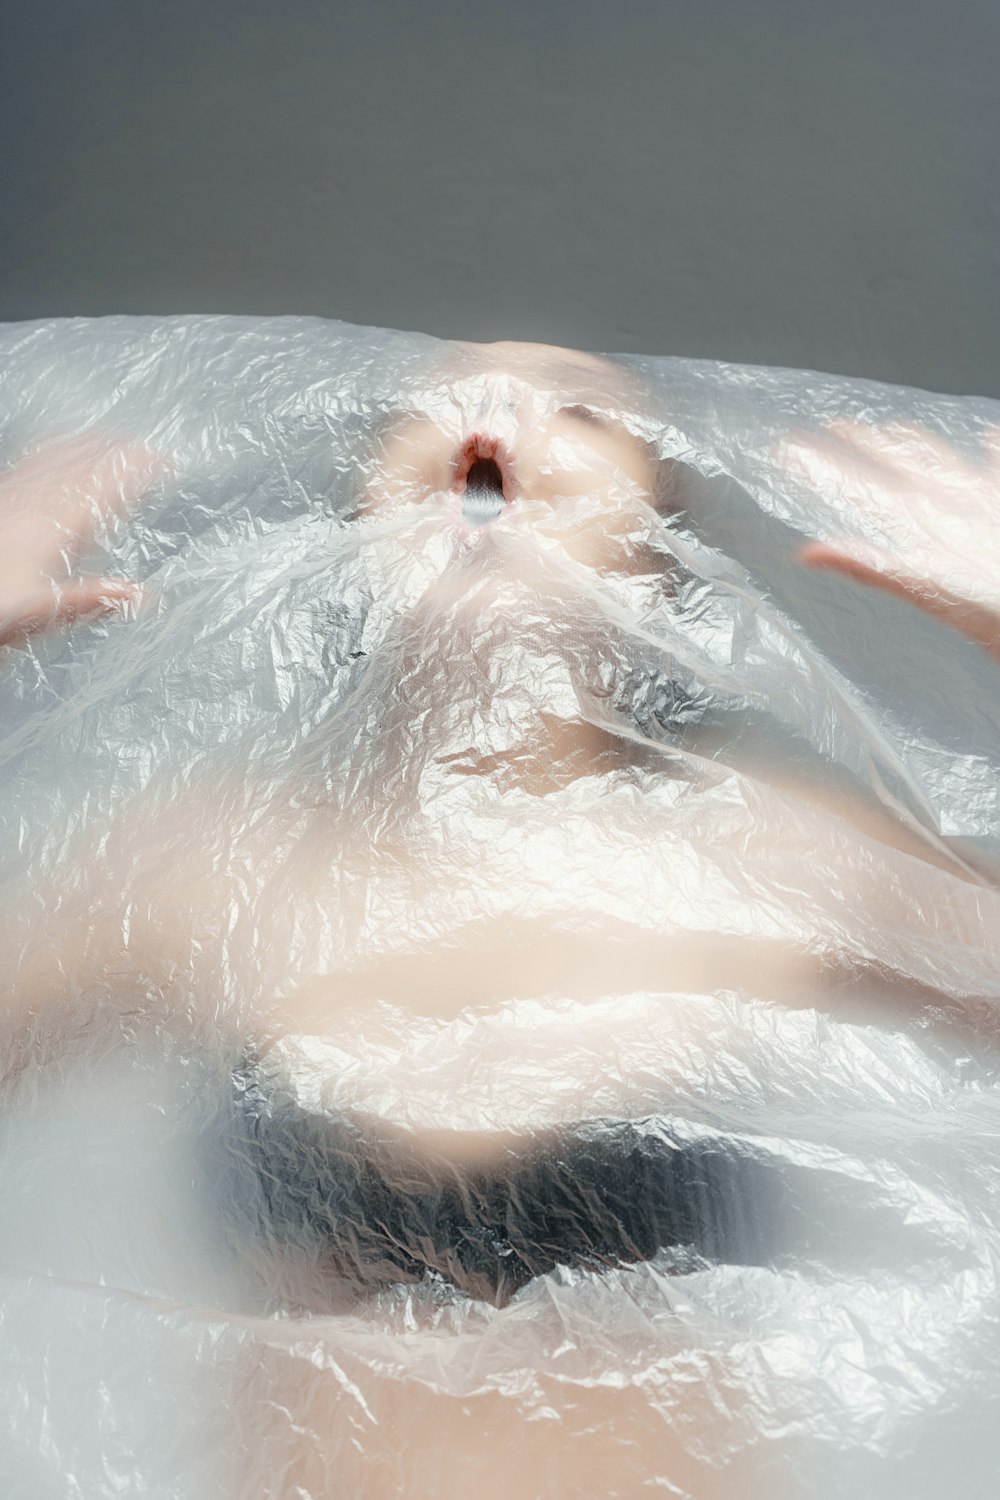 uma mulher deitada em uma banheira coberta de plástico